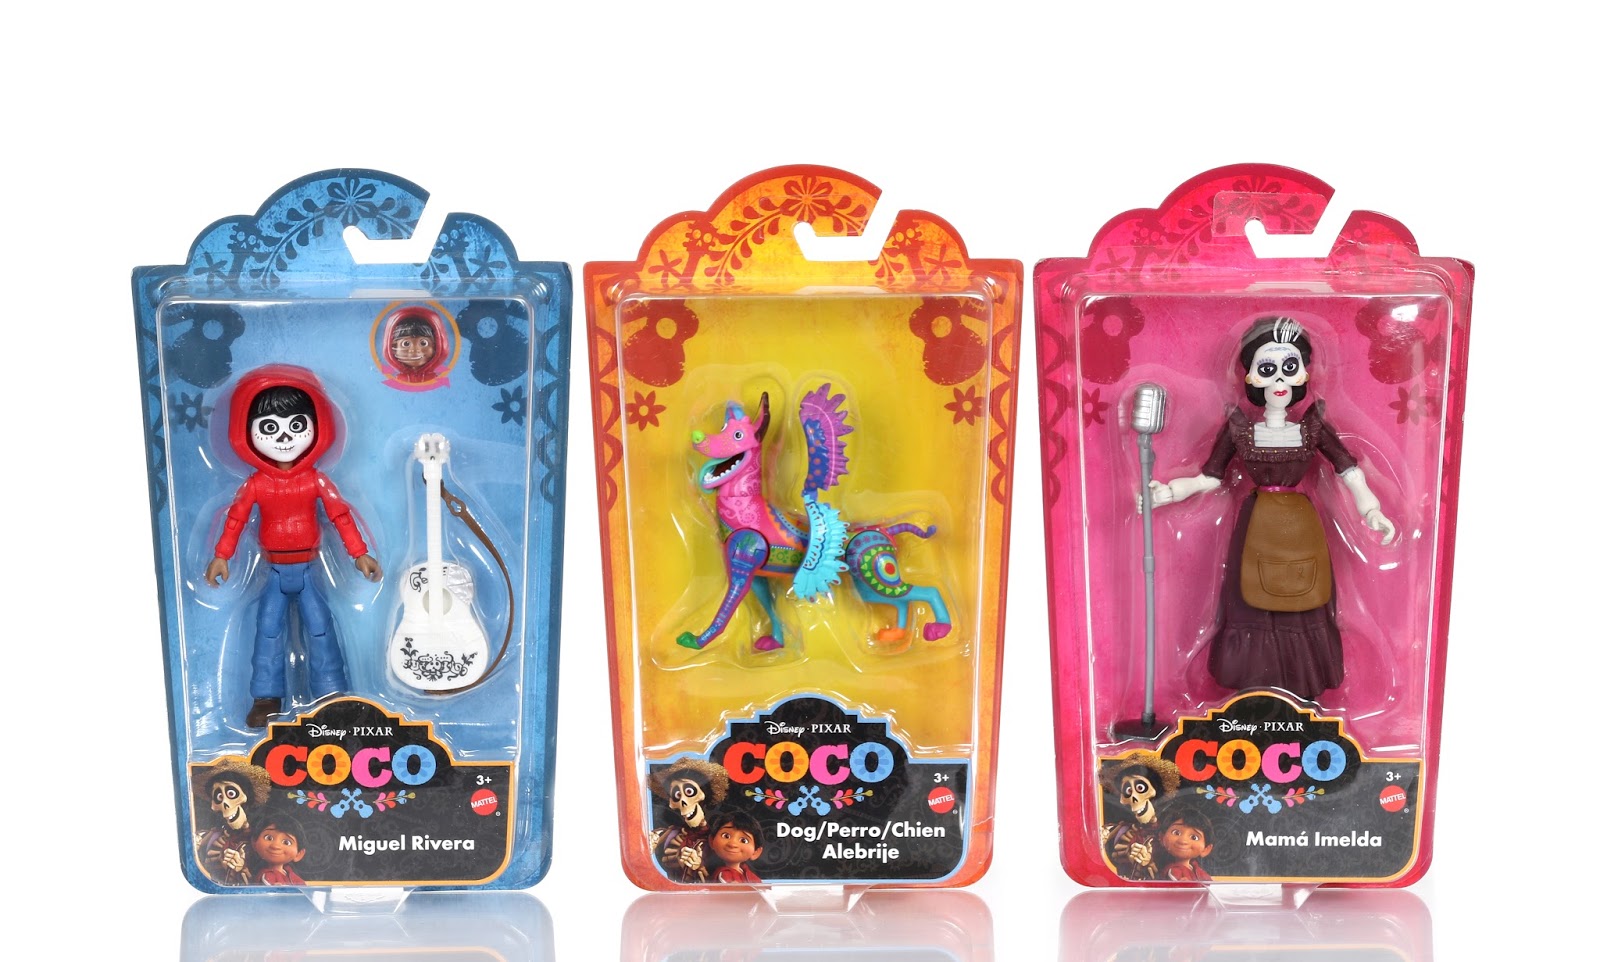 Coco Movie Figures 8pcs Cake Topper Toys Pixar Miguel Riveras Characters Figure Toys Collectors Miguel Ernesto de la Cruz Hector Toy 